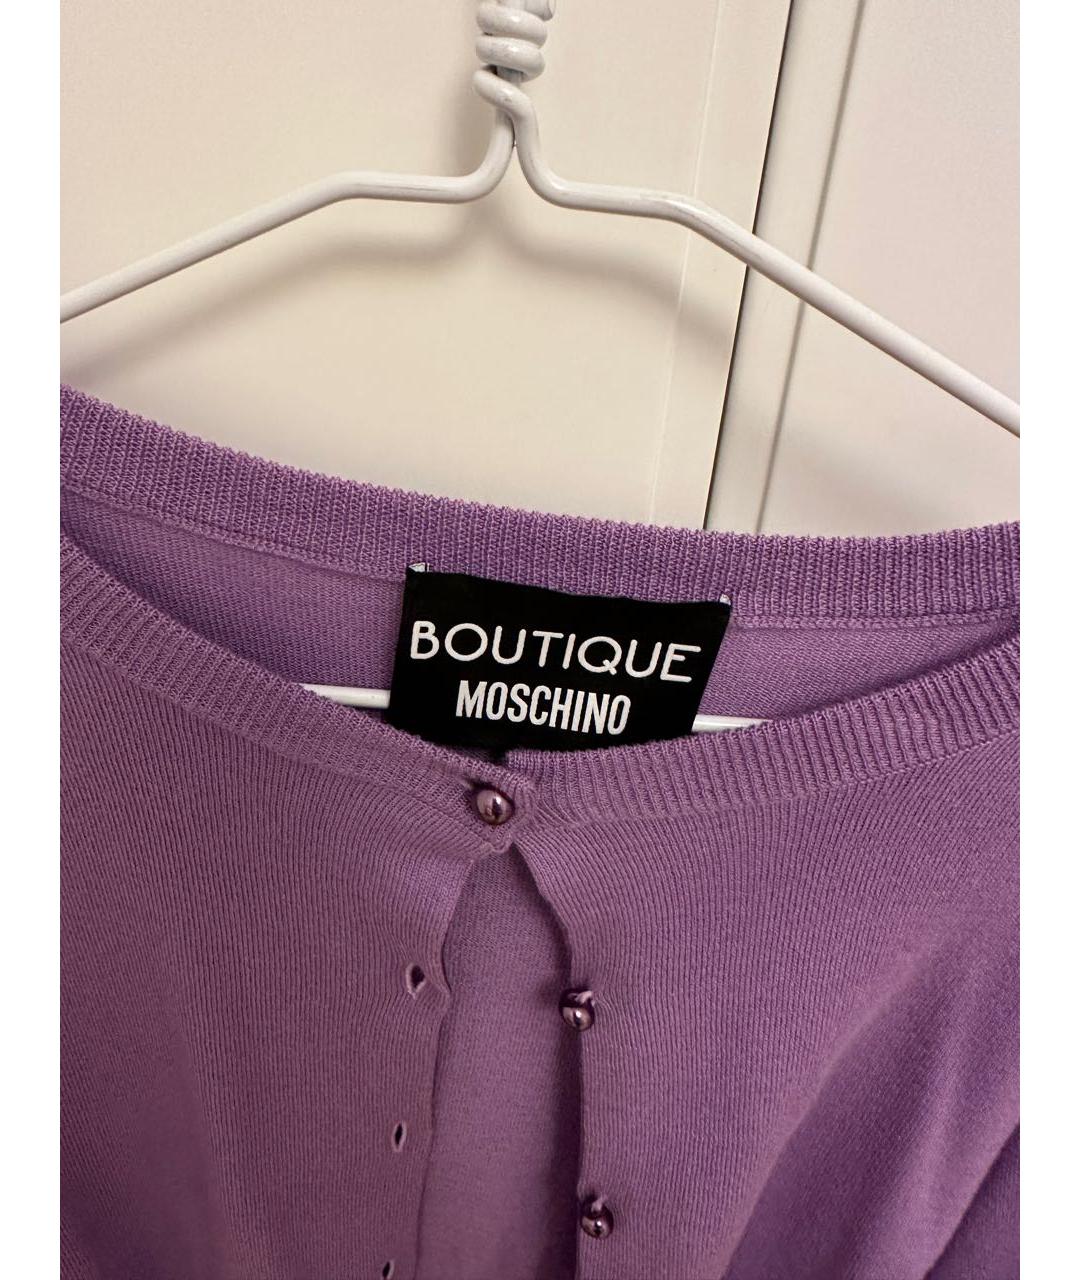 BOUTIQUE MOSCHINO Фиолетовый шерстяной жакет/пиджак, фото 2